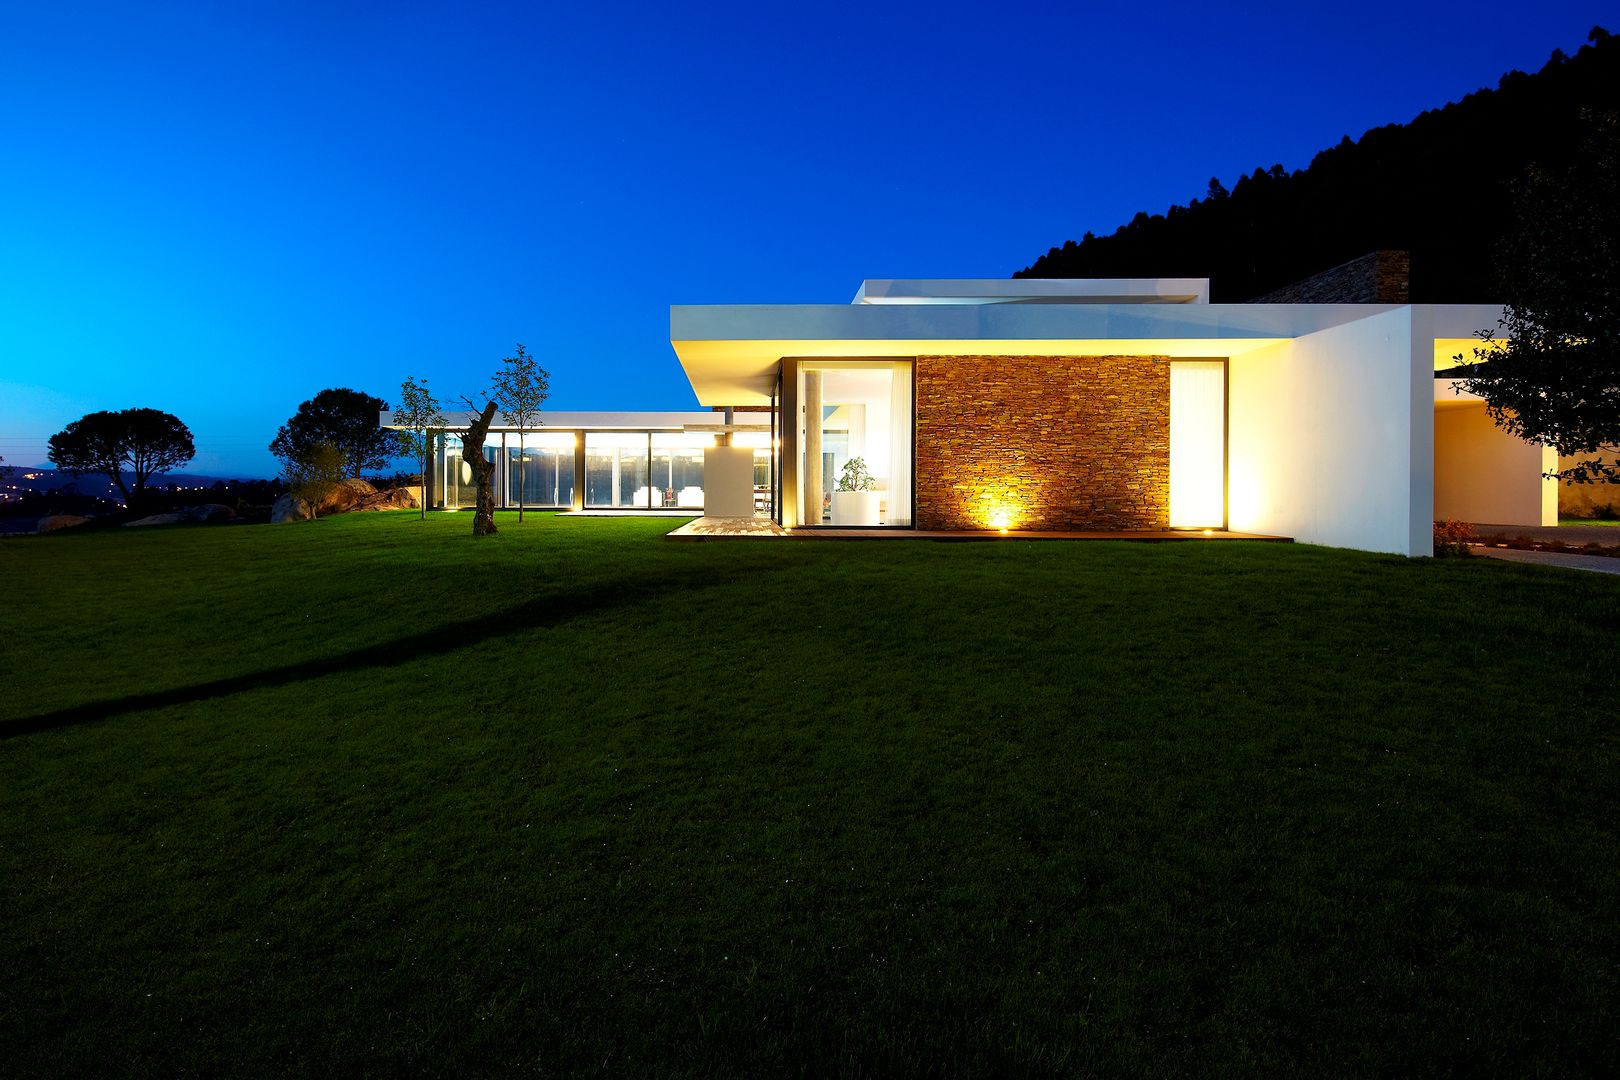 Casa moderna de dimensões generosas e piscina interior, Risco Singular - Arquitectura Lda Risco Singular - Arquitectura Lda Casas de estilo minimalista